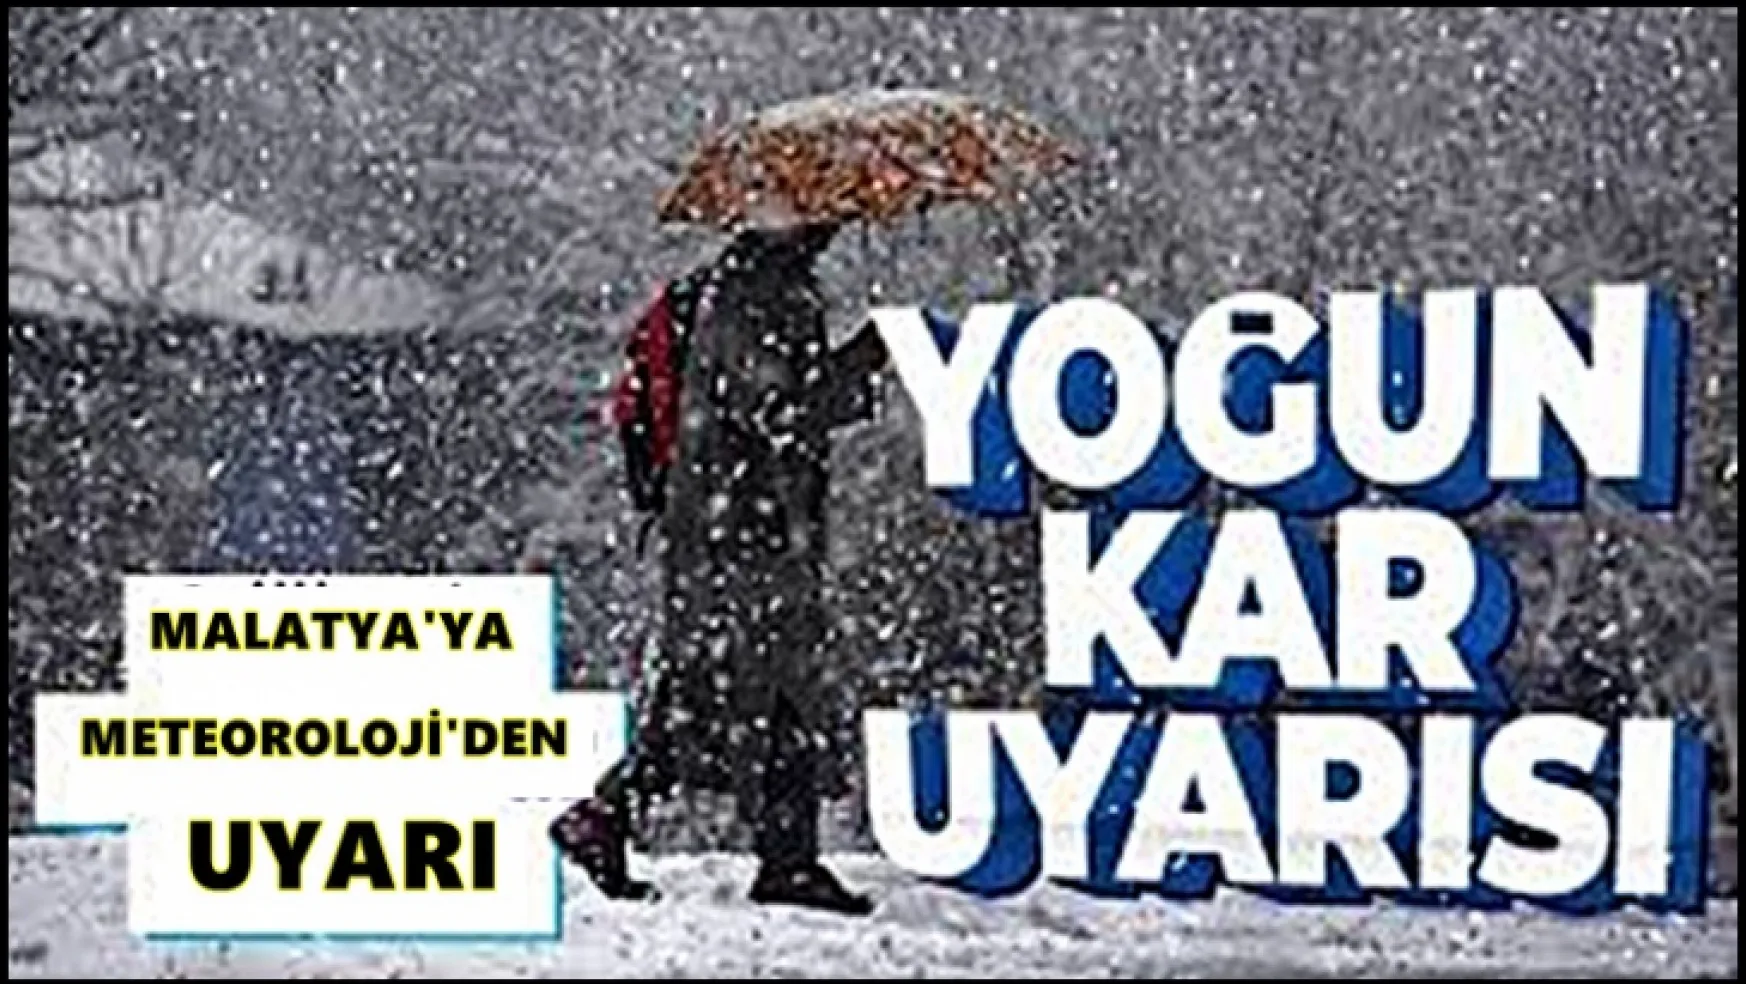 Malatya'da Yoğun Kar Yağışı Bekleniyor!